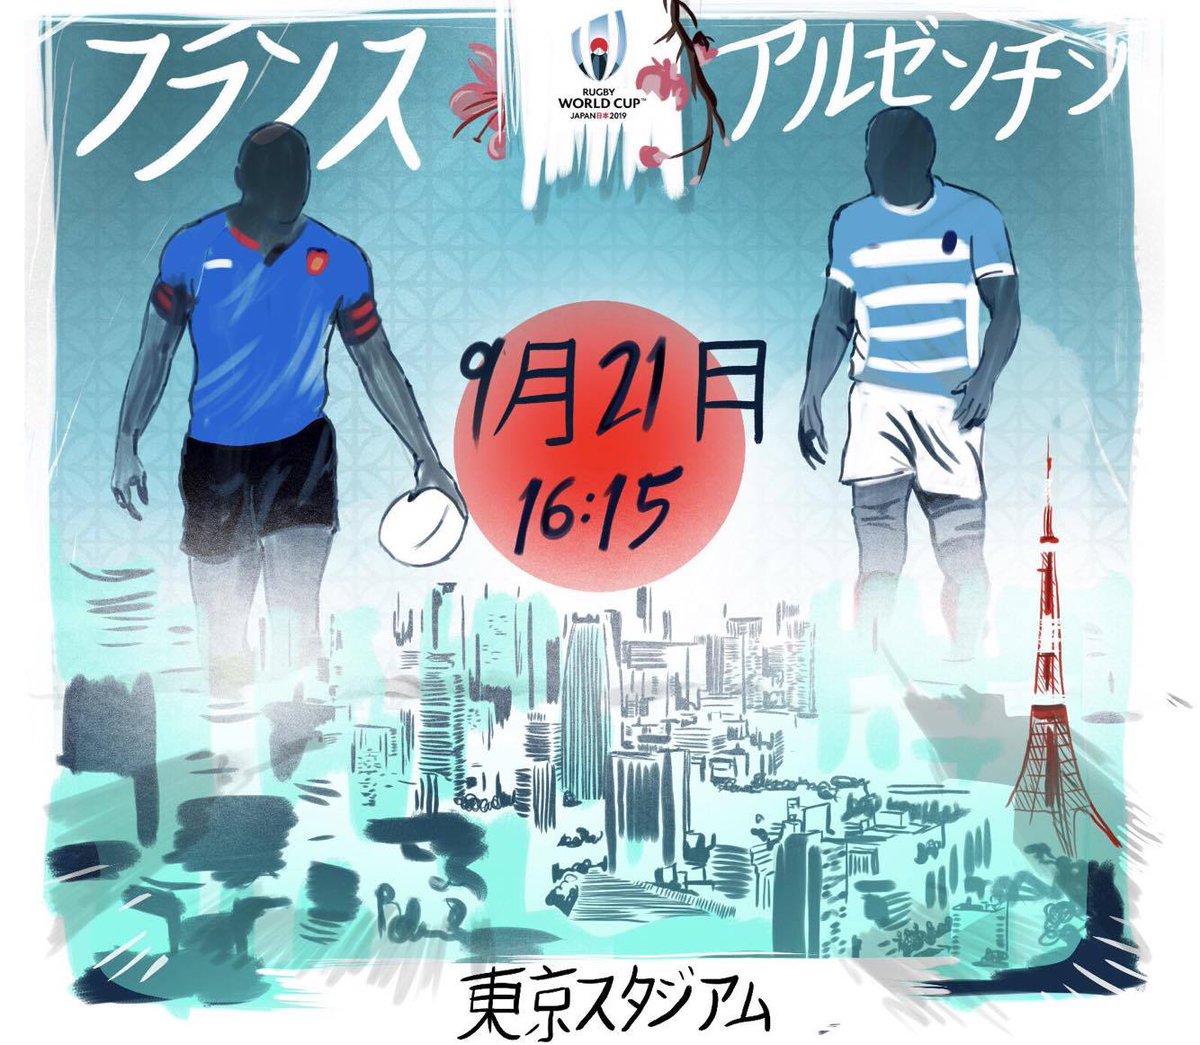 ラグビーワールドカップ 試合日程発表 19年9月21日 土 16 15 キックオフ 東京 東京スタジアム プールc フランス 対 アルゼンチン Rwc19